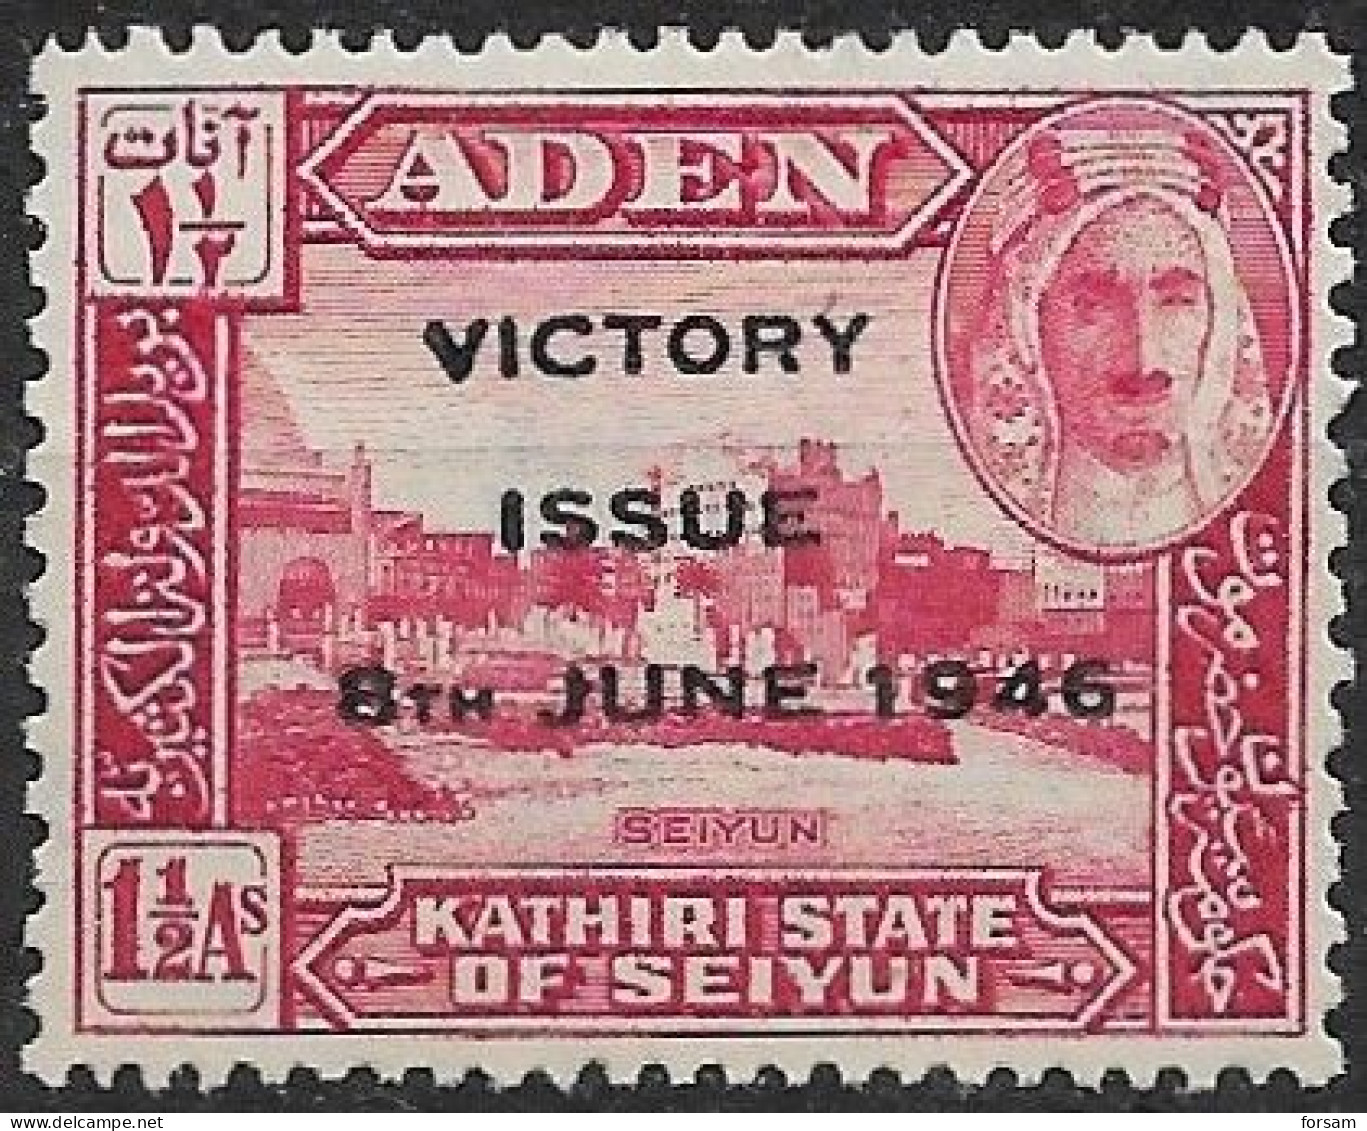 ADEN (PROTEKTOTAT)..1946..Michel # 12...MLH. - Aden (1854-1963)